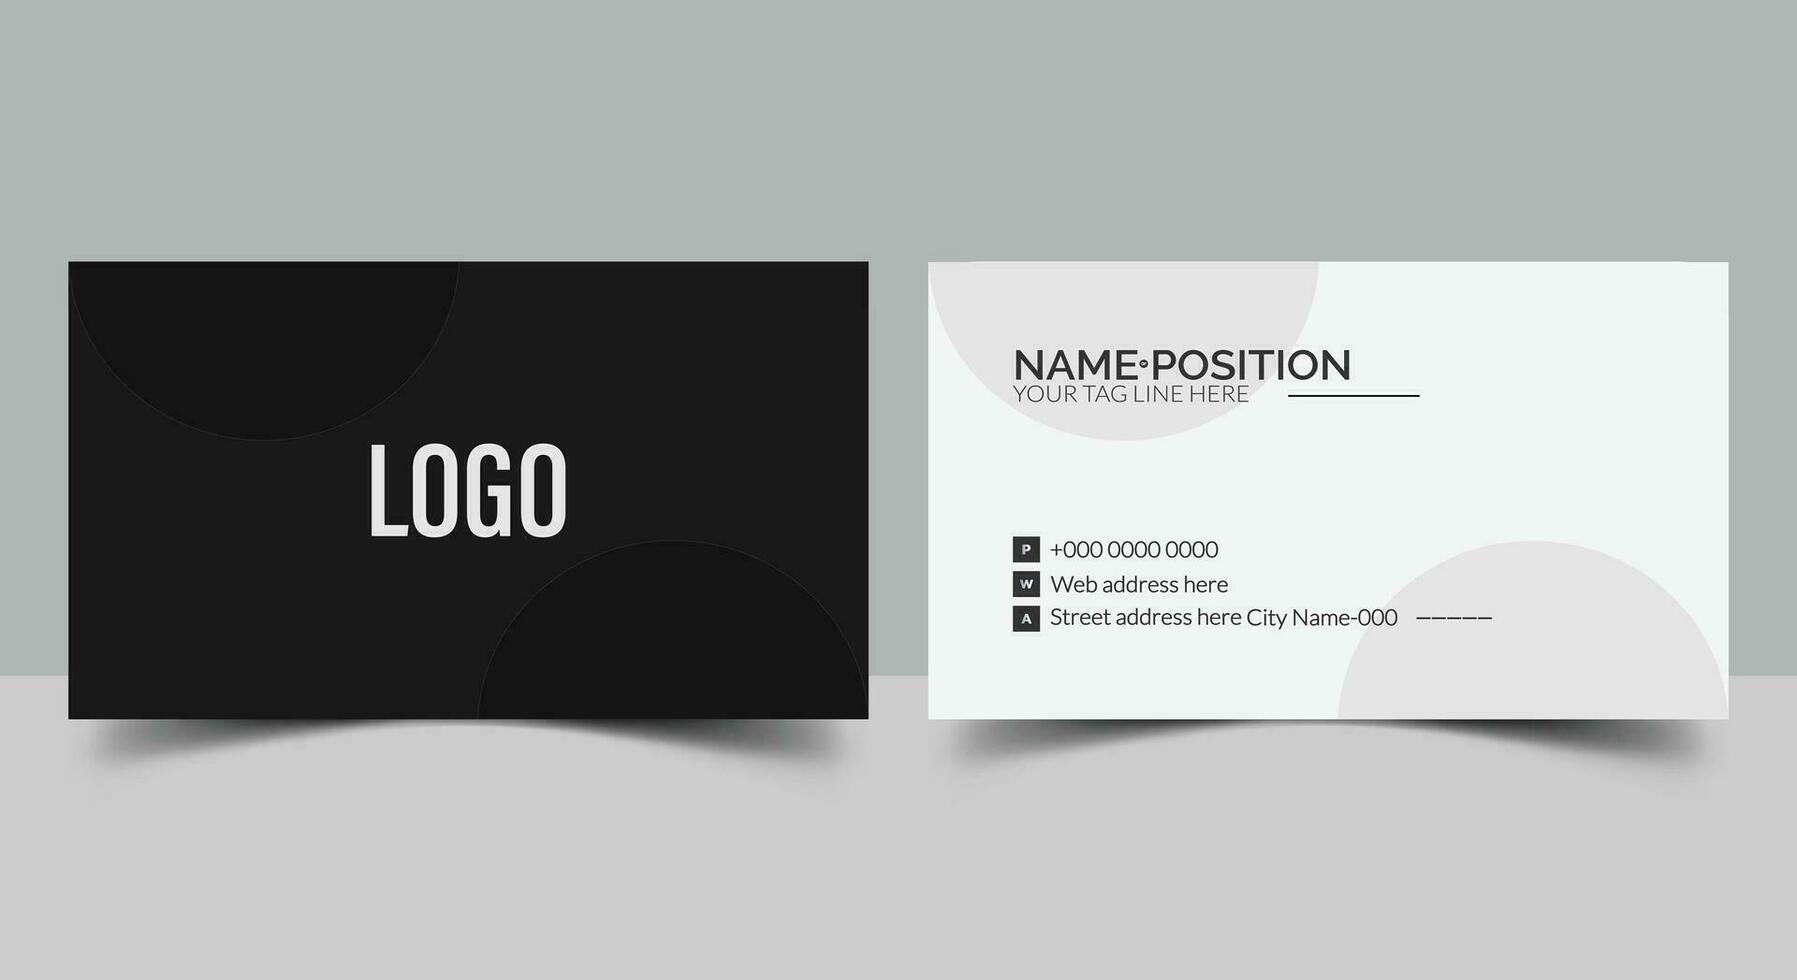 azul moderno creativo negro y blanco negocio tarjeta y nombre tarjeta horizontal sencillo limpiar modelo vector diseño